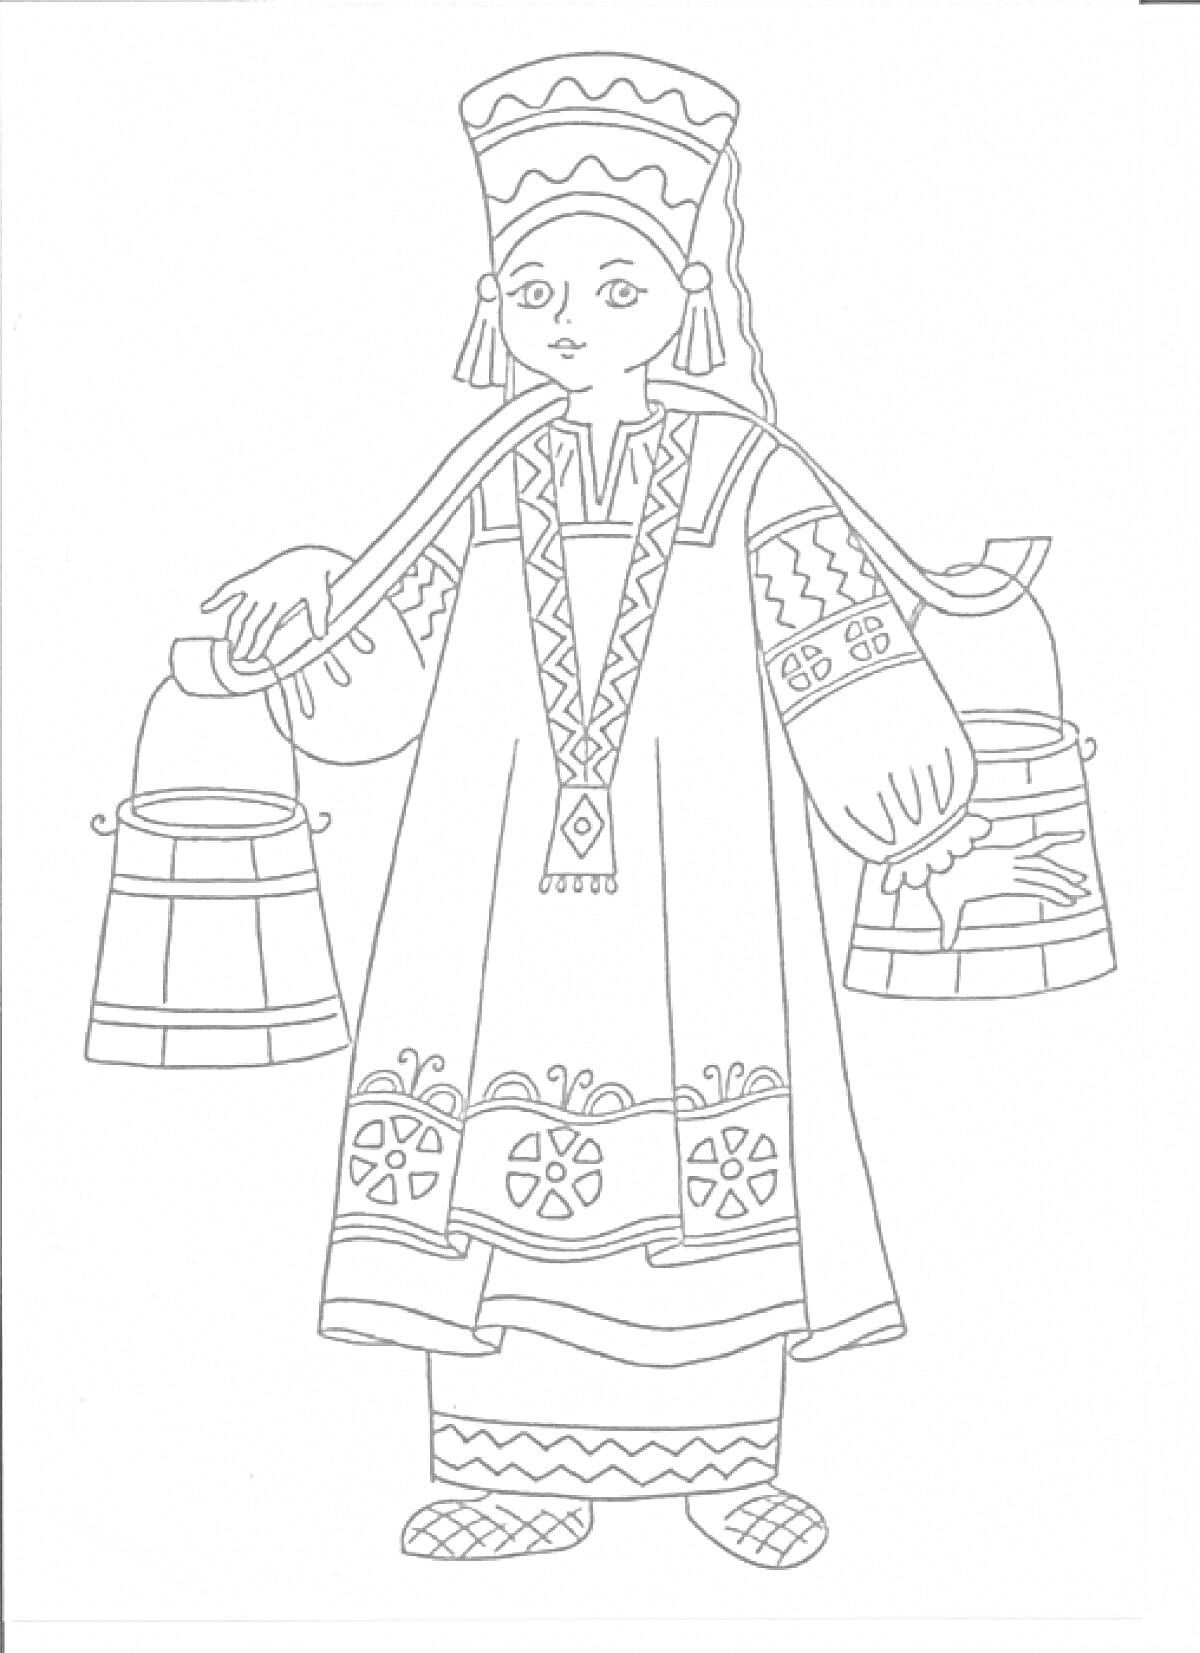 Раскраска Девушка в русском народном костюме с коромыслом, ведра, кокошник, сарафан с узорами, рубаха с длинными рукавами, лапти